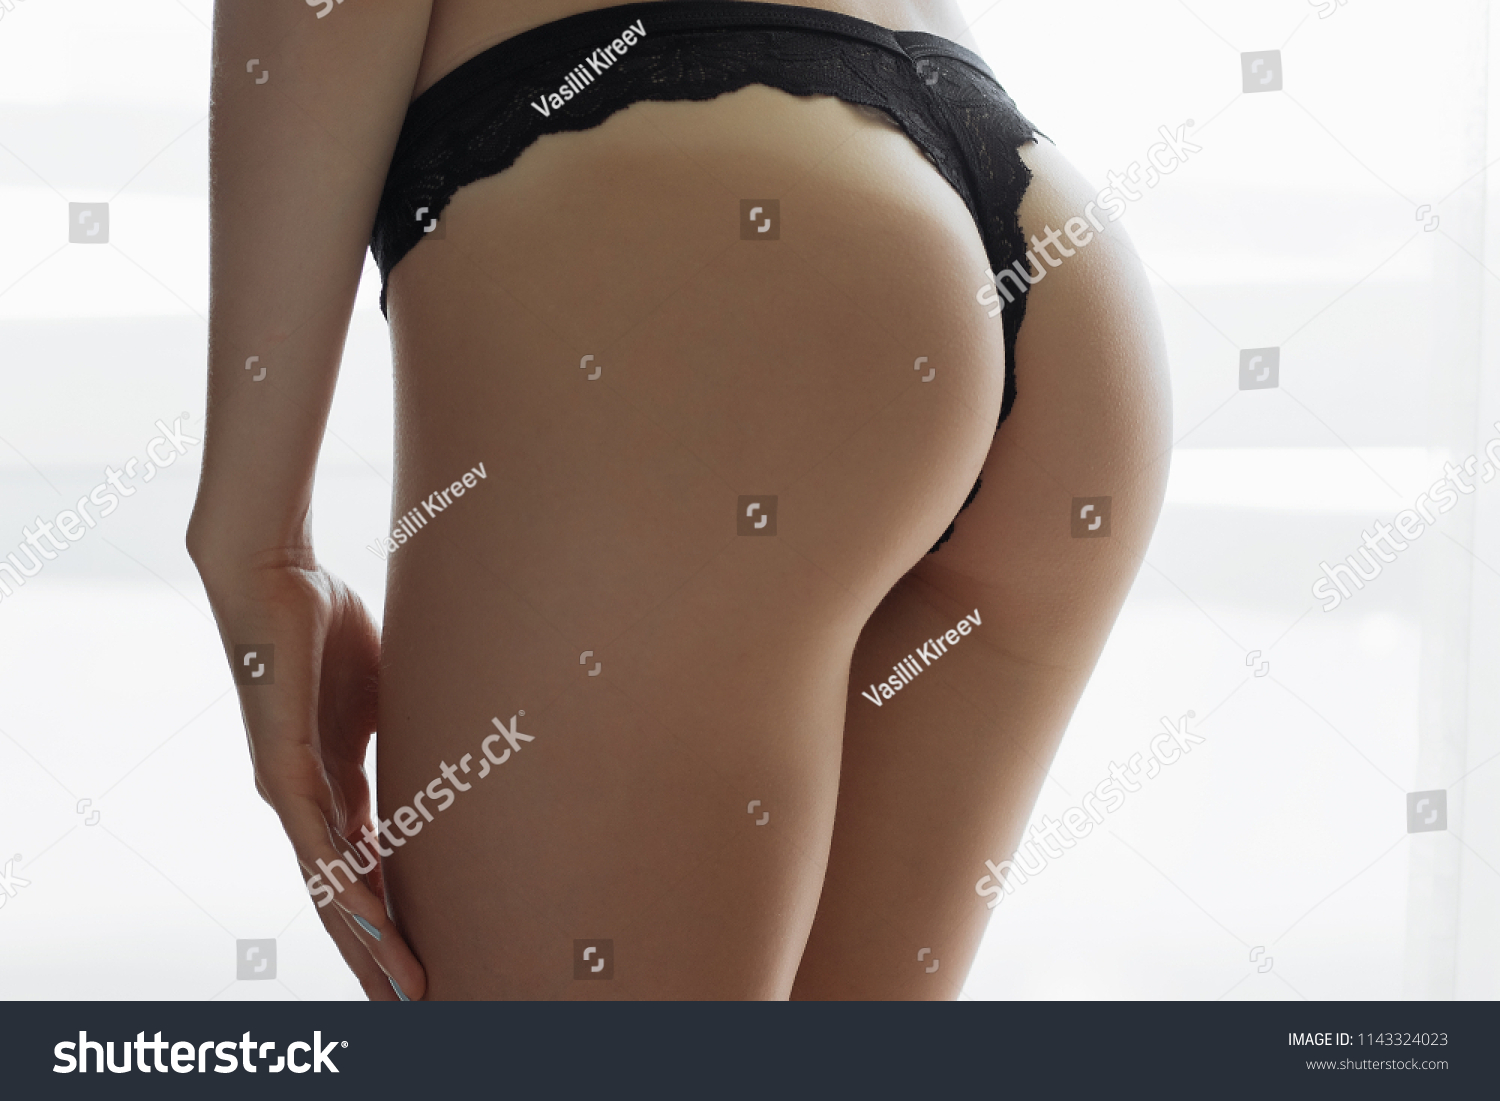 great ass girl